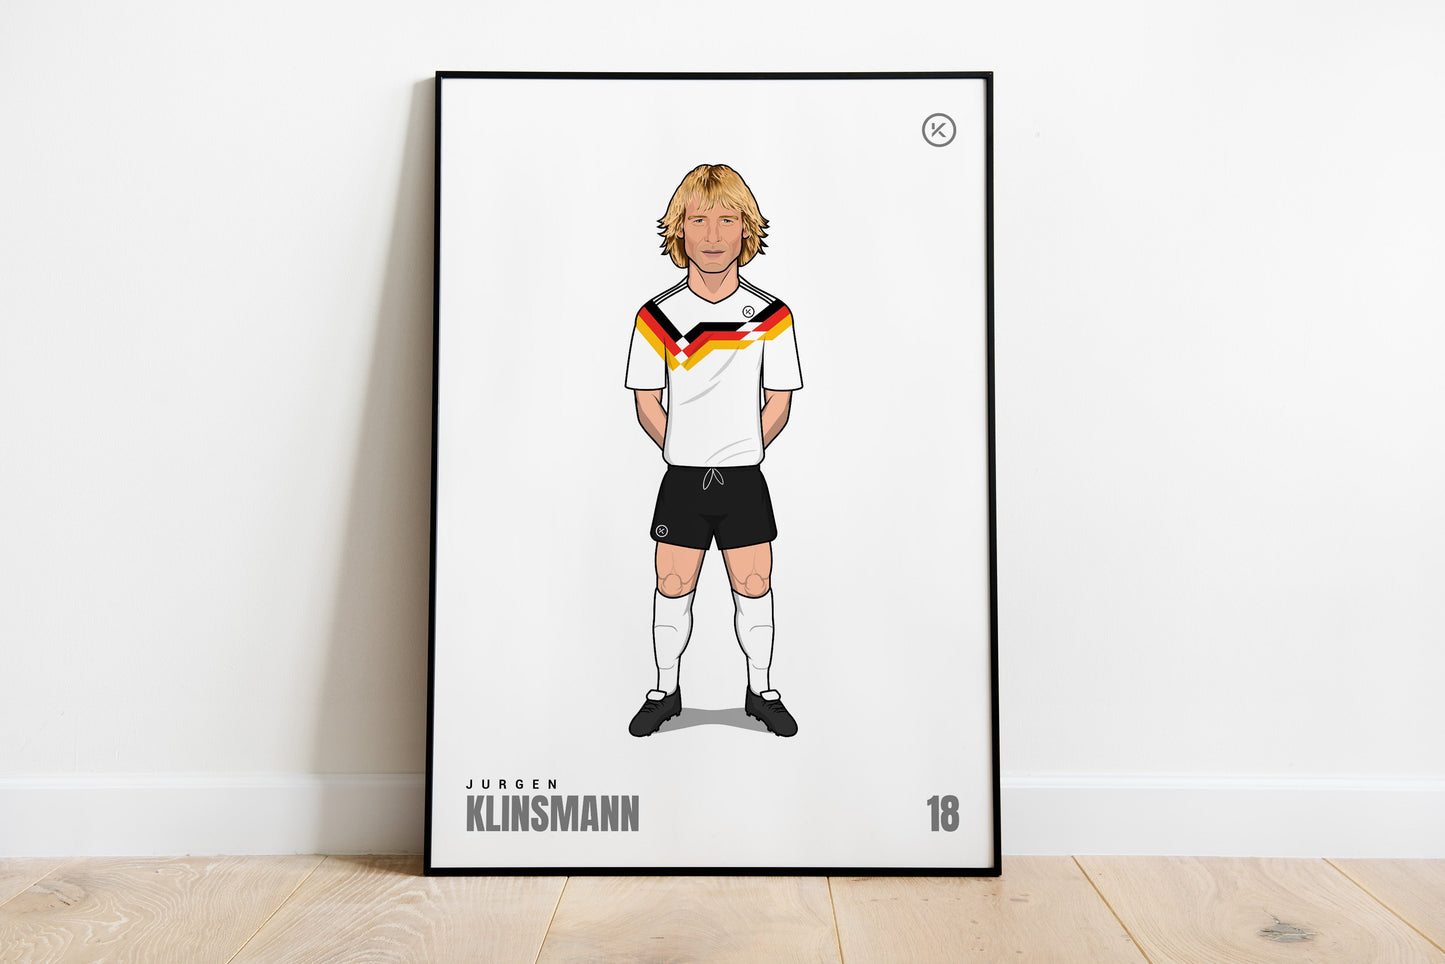 Jurgen Klinsmann - Football Great